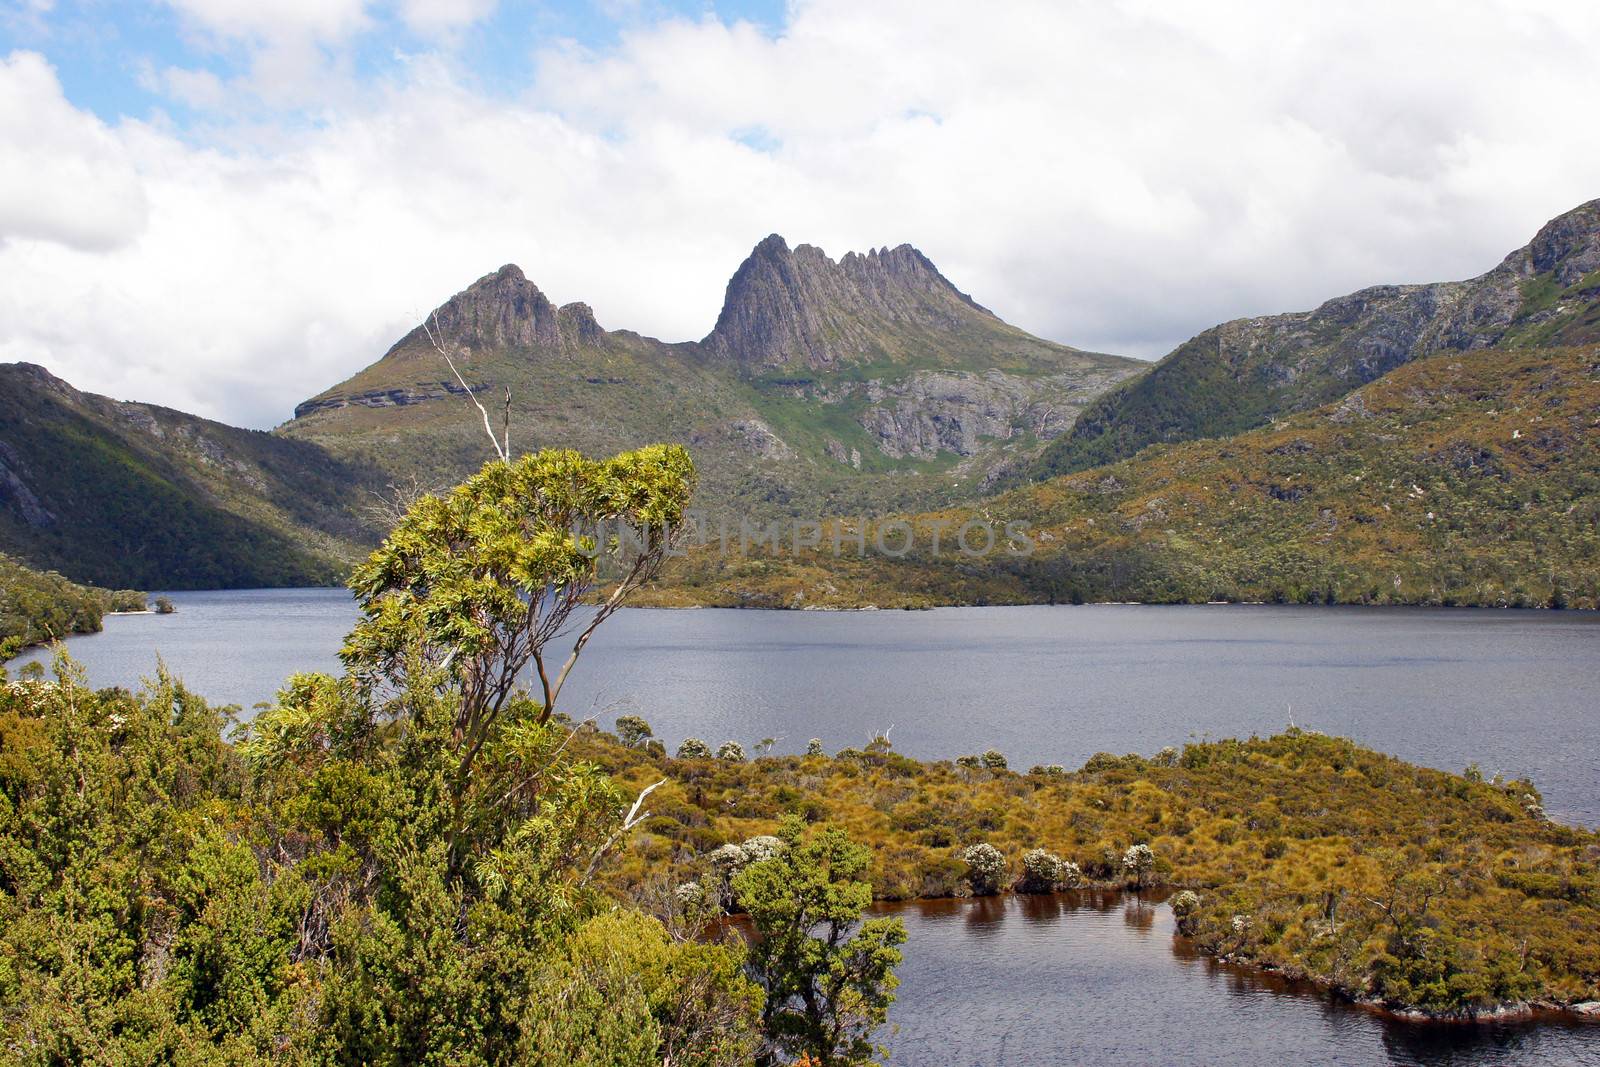 Cradle Mountain Lake St. Clair National Park, Tasmania, Australia